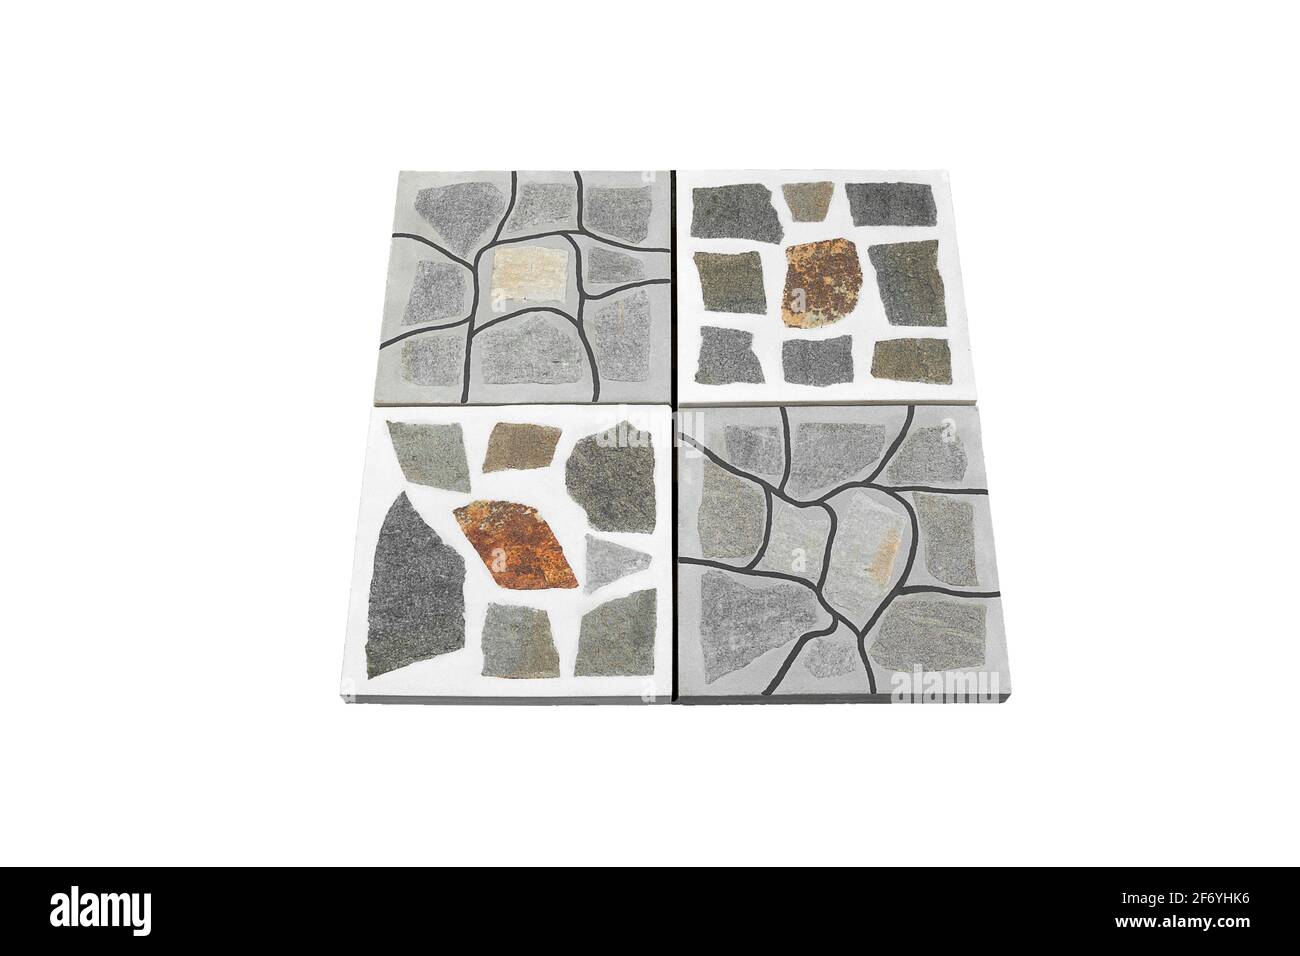 Piedra de pavimentación blanca y gris de hormigón aislada sobre fondo blanco. El azulejo tiene una superficie superior plana sin chaflán y se ajusta cómodamente al pavimentar. Foto de stock